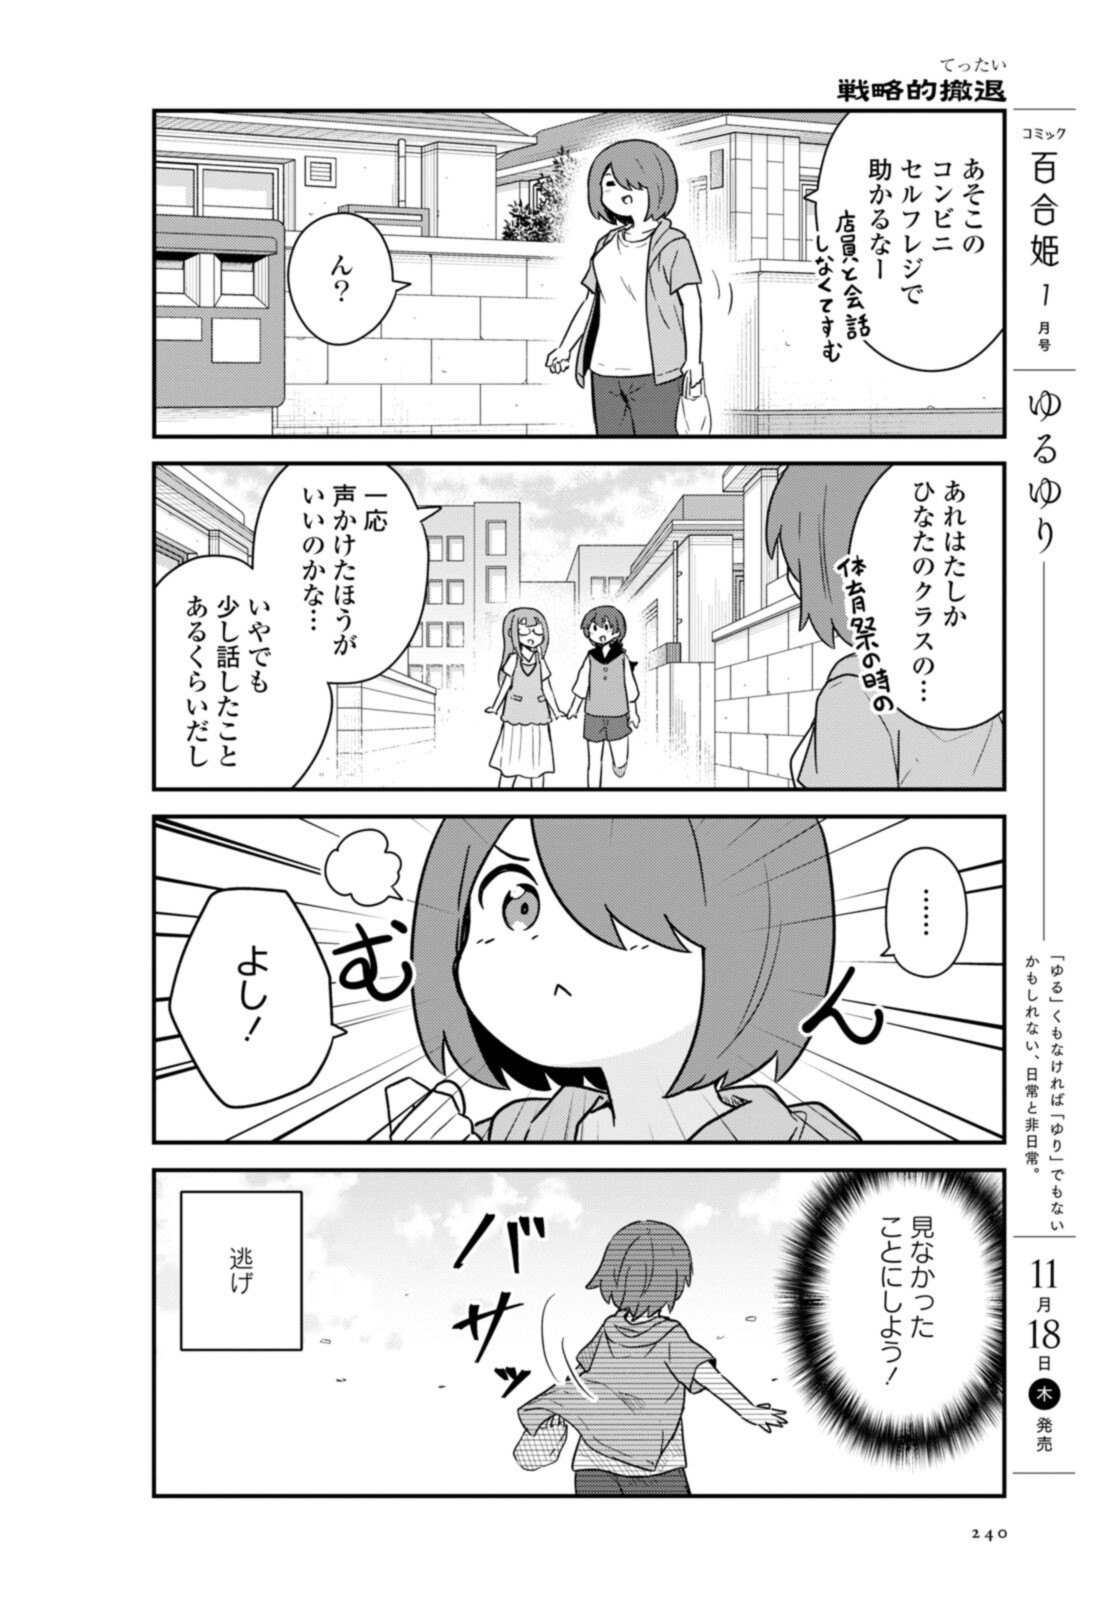 Watashi ni Tenshi ga Maiorita! - Chapter 89 - Page 2